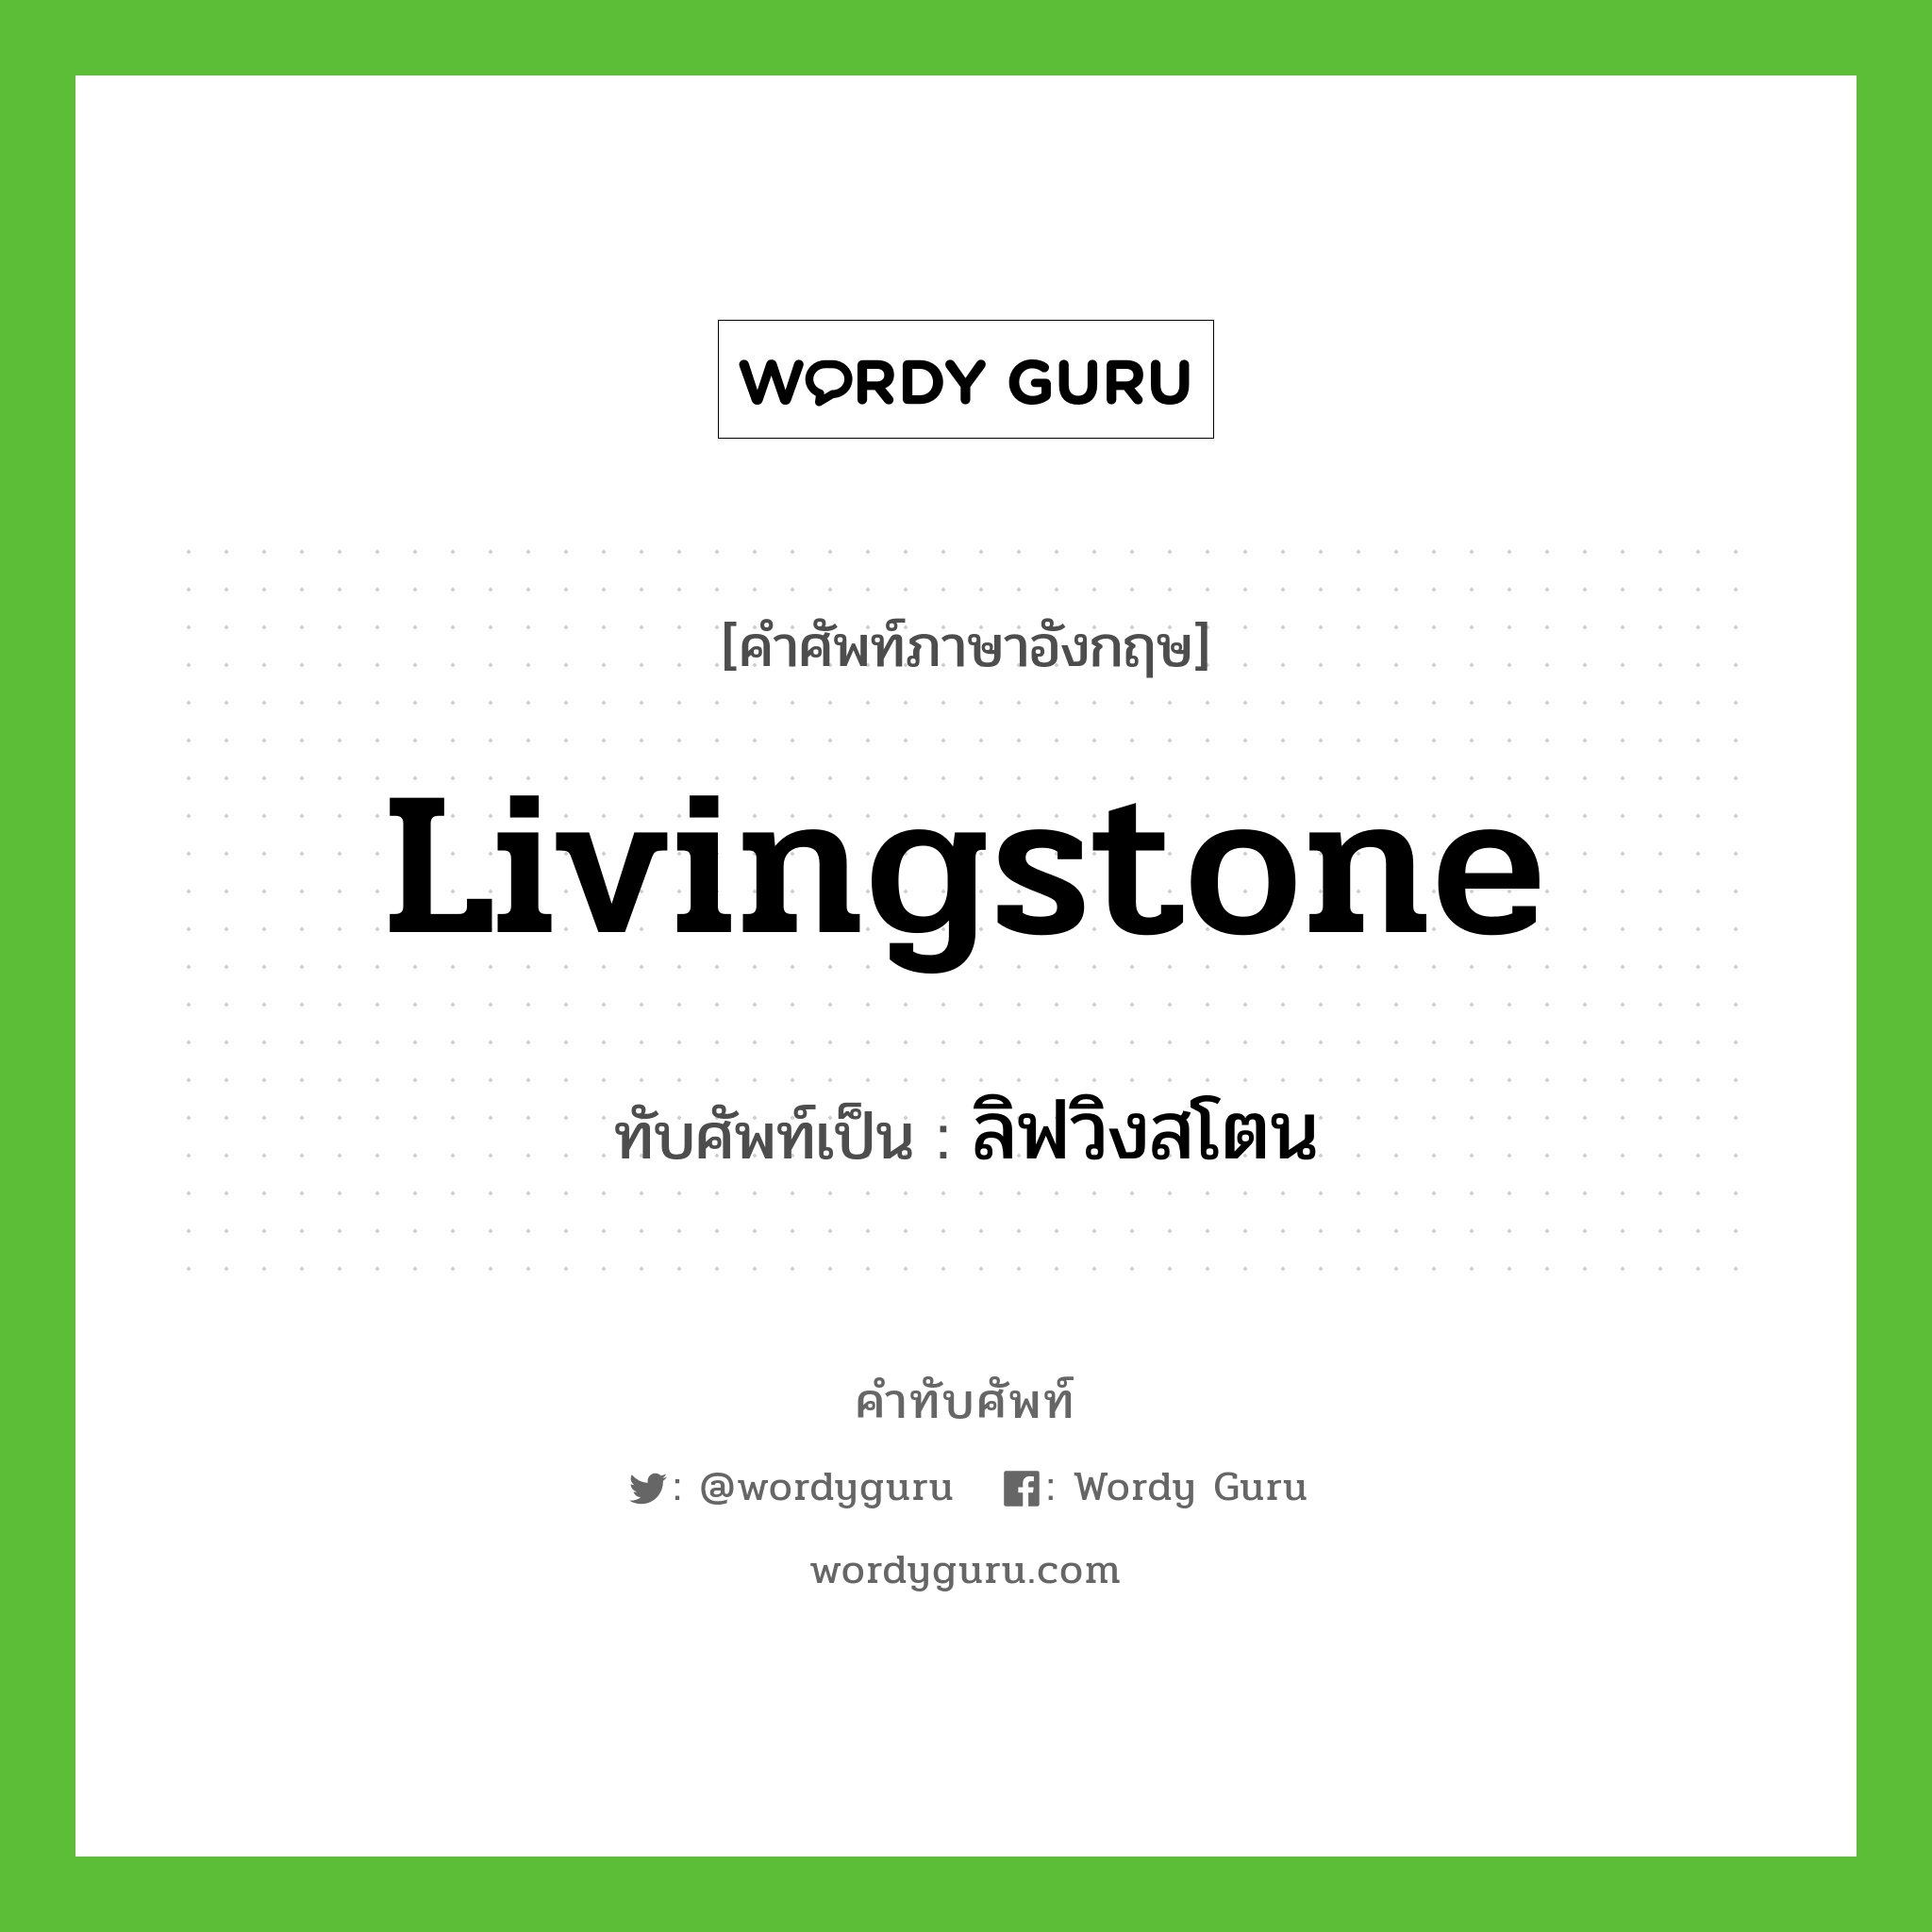 Livingstone เขียนเป็นคำไทยว่าอะไร?, คำศัพท์ภาษาอังกฤษ Livingstone ทับศัพท์เป็น ลิฟวิงสโตน